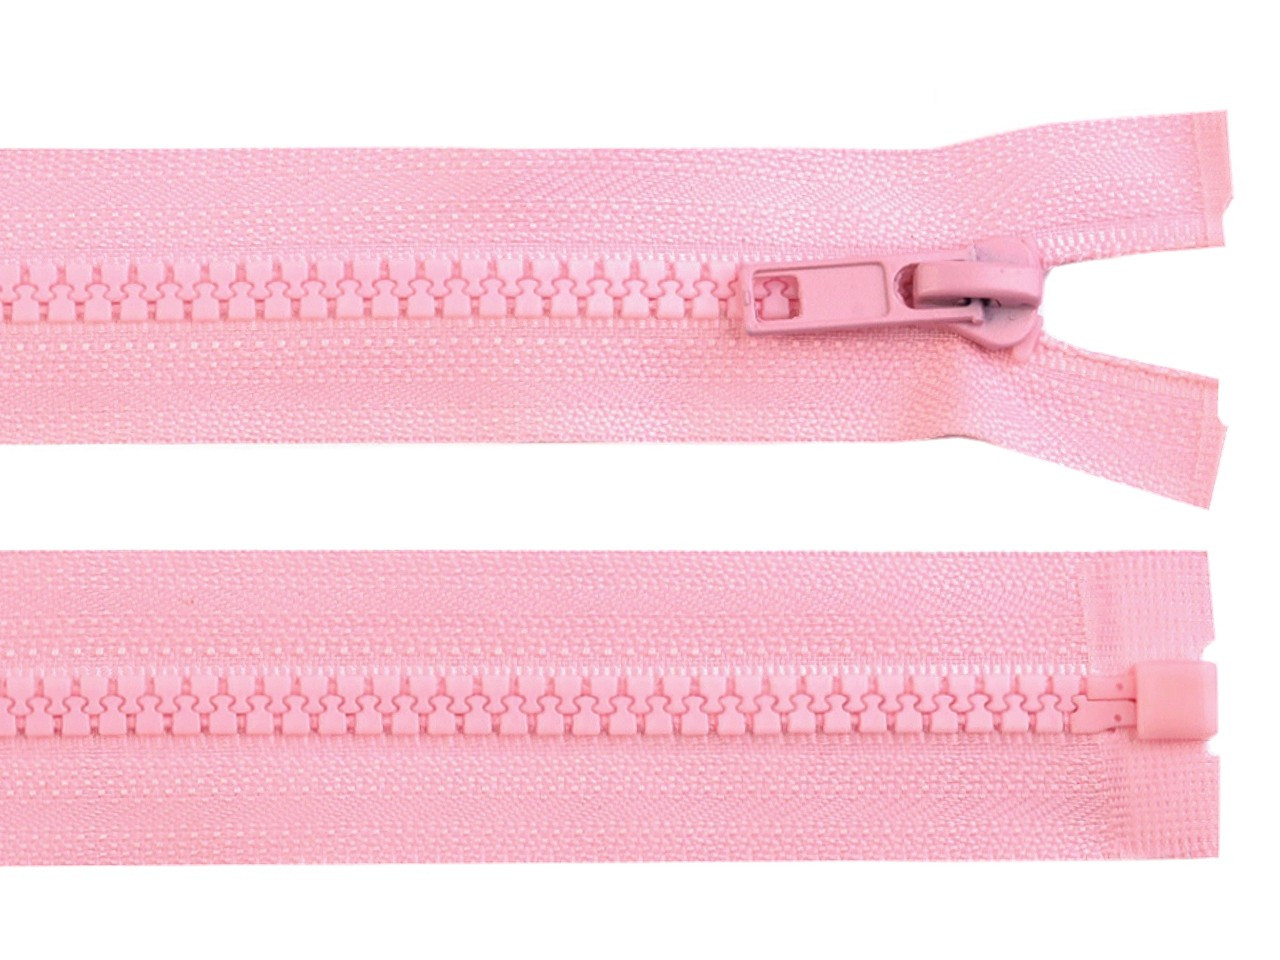 Kostěný zip No 5 délka 35 cm bundový, barva 134 růžová dětská světlá